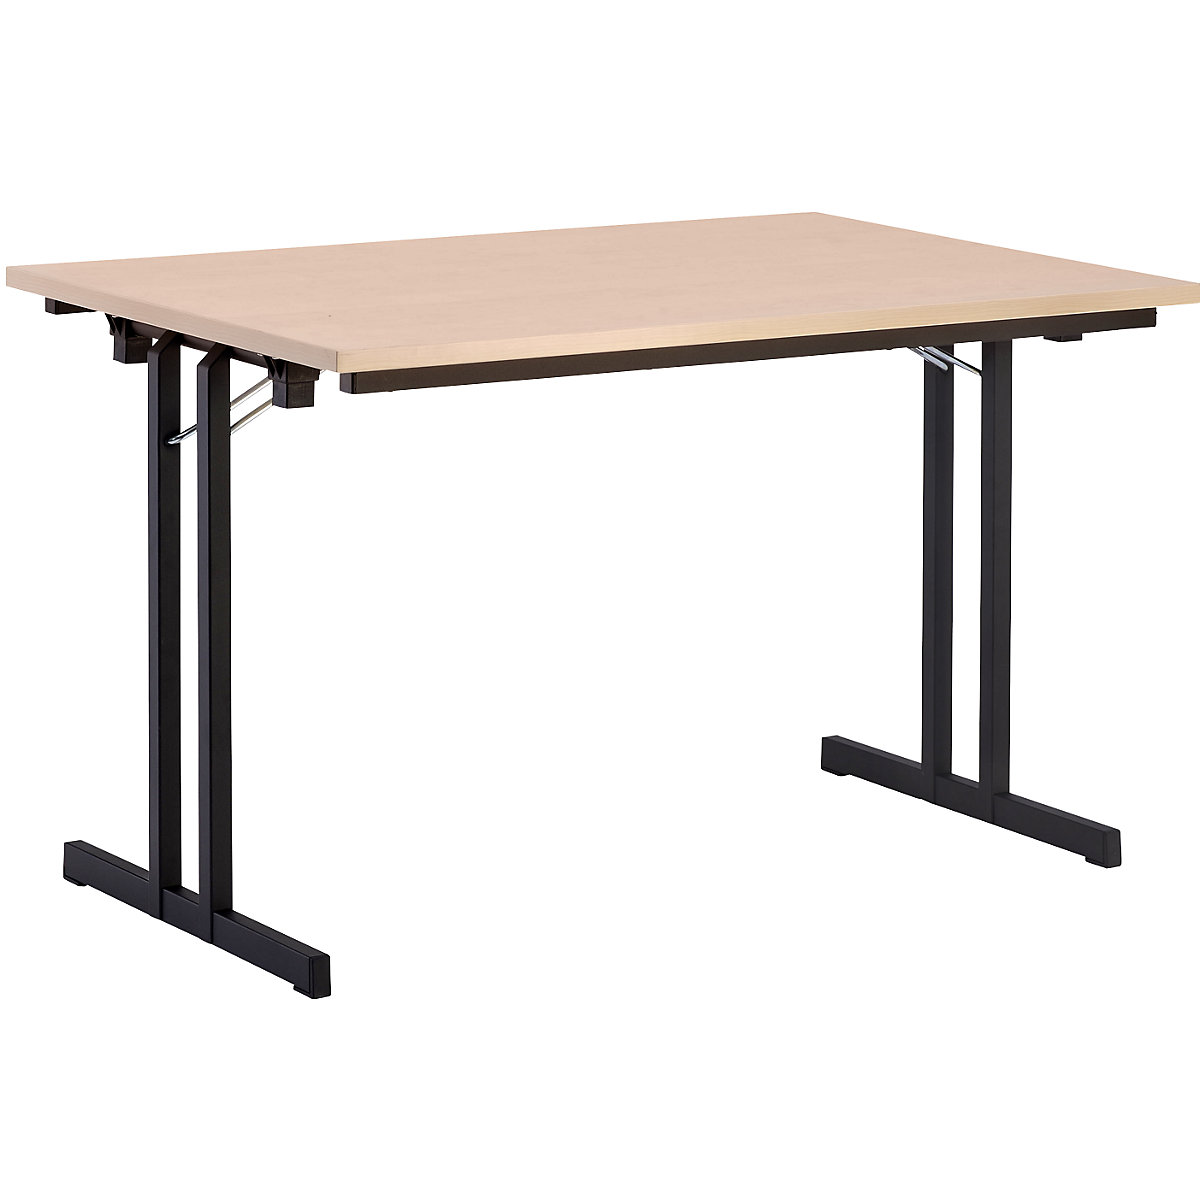 Sklopný stůl, s mimořádně silnou deskou, výška 720 mm, 1200 x 800 mm, podstavec černý, deska javorový dekor